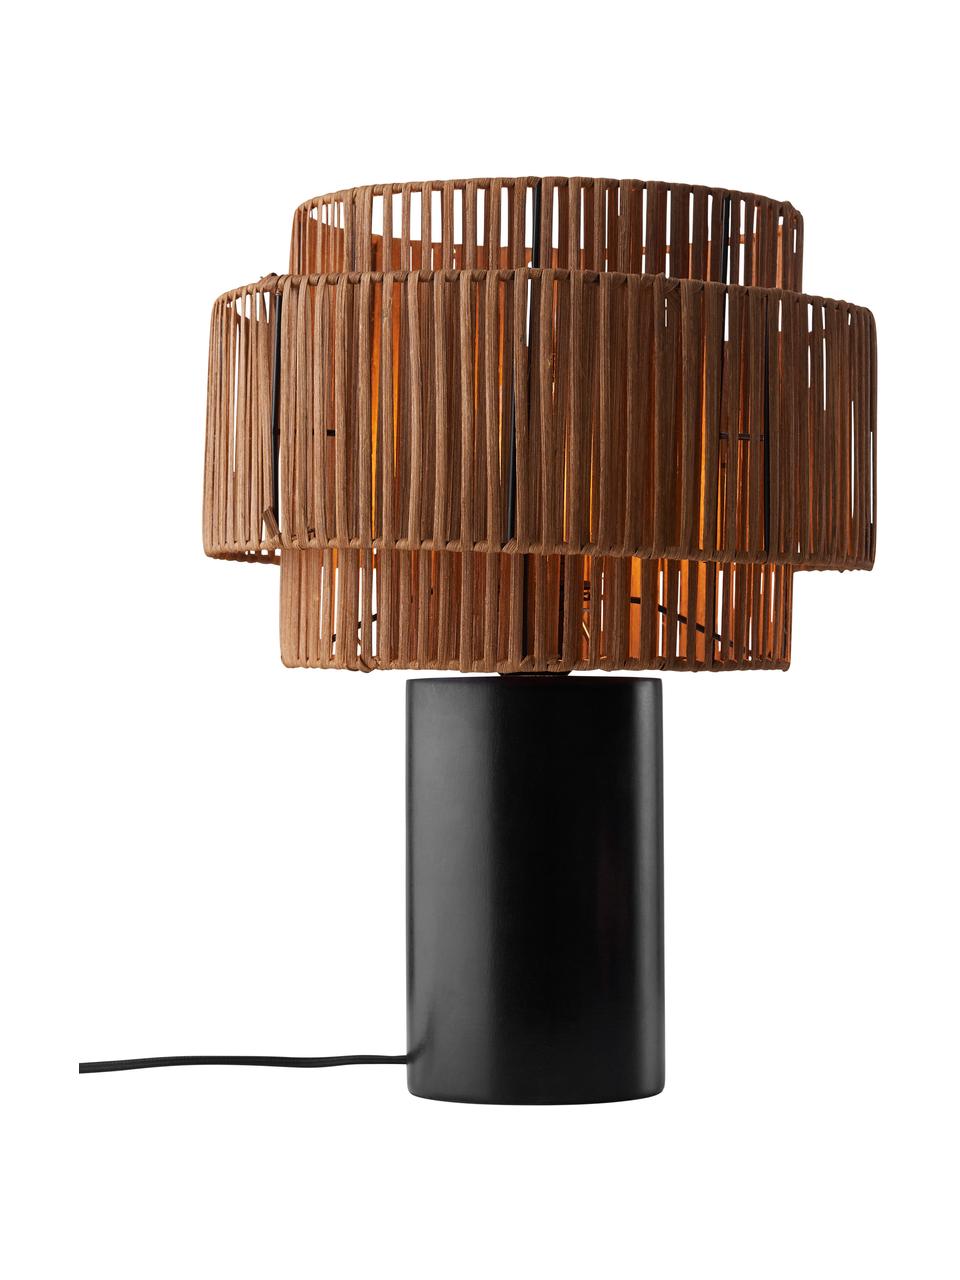 Lampada da tavolo in rattan e legno Emelee, Paralume: rattan, Base della lampada: legno, Marrone, nero, Ø 30 x Alt. 41 cm